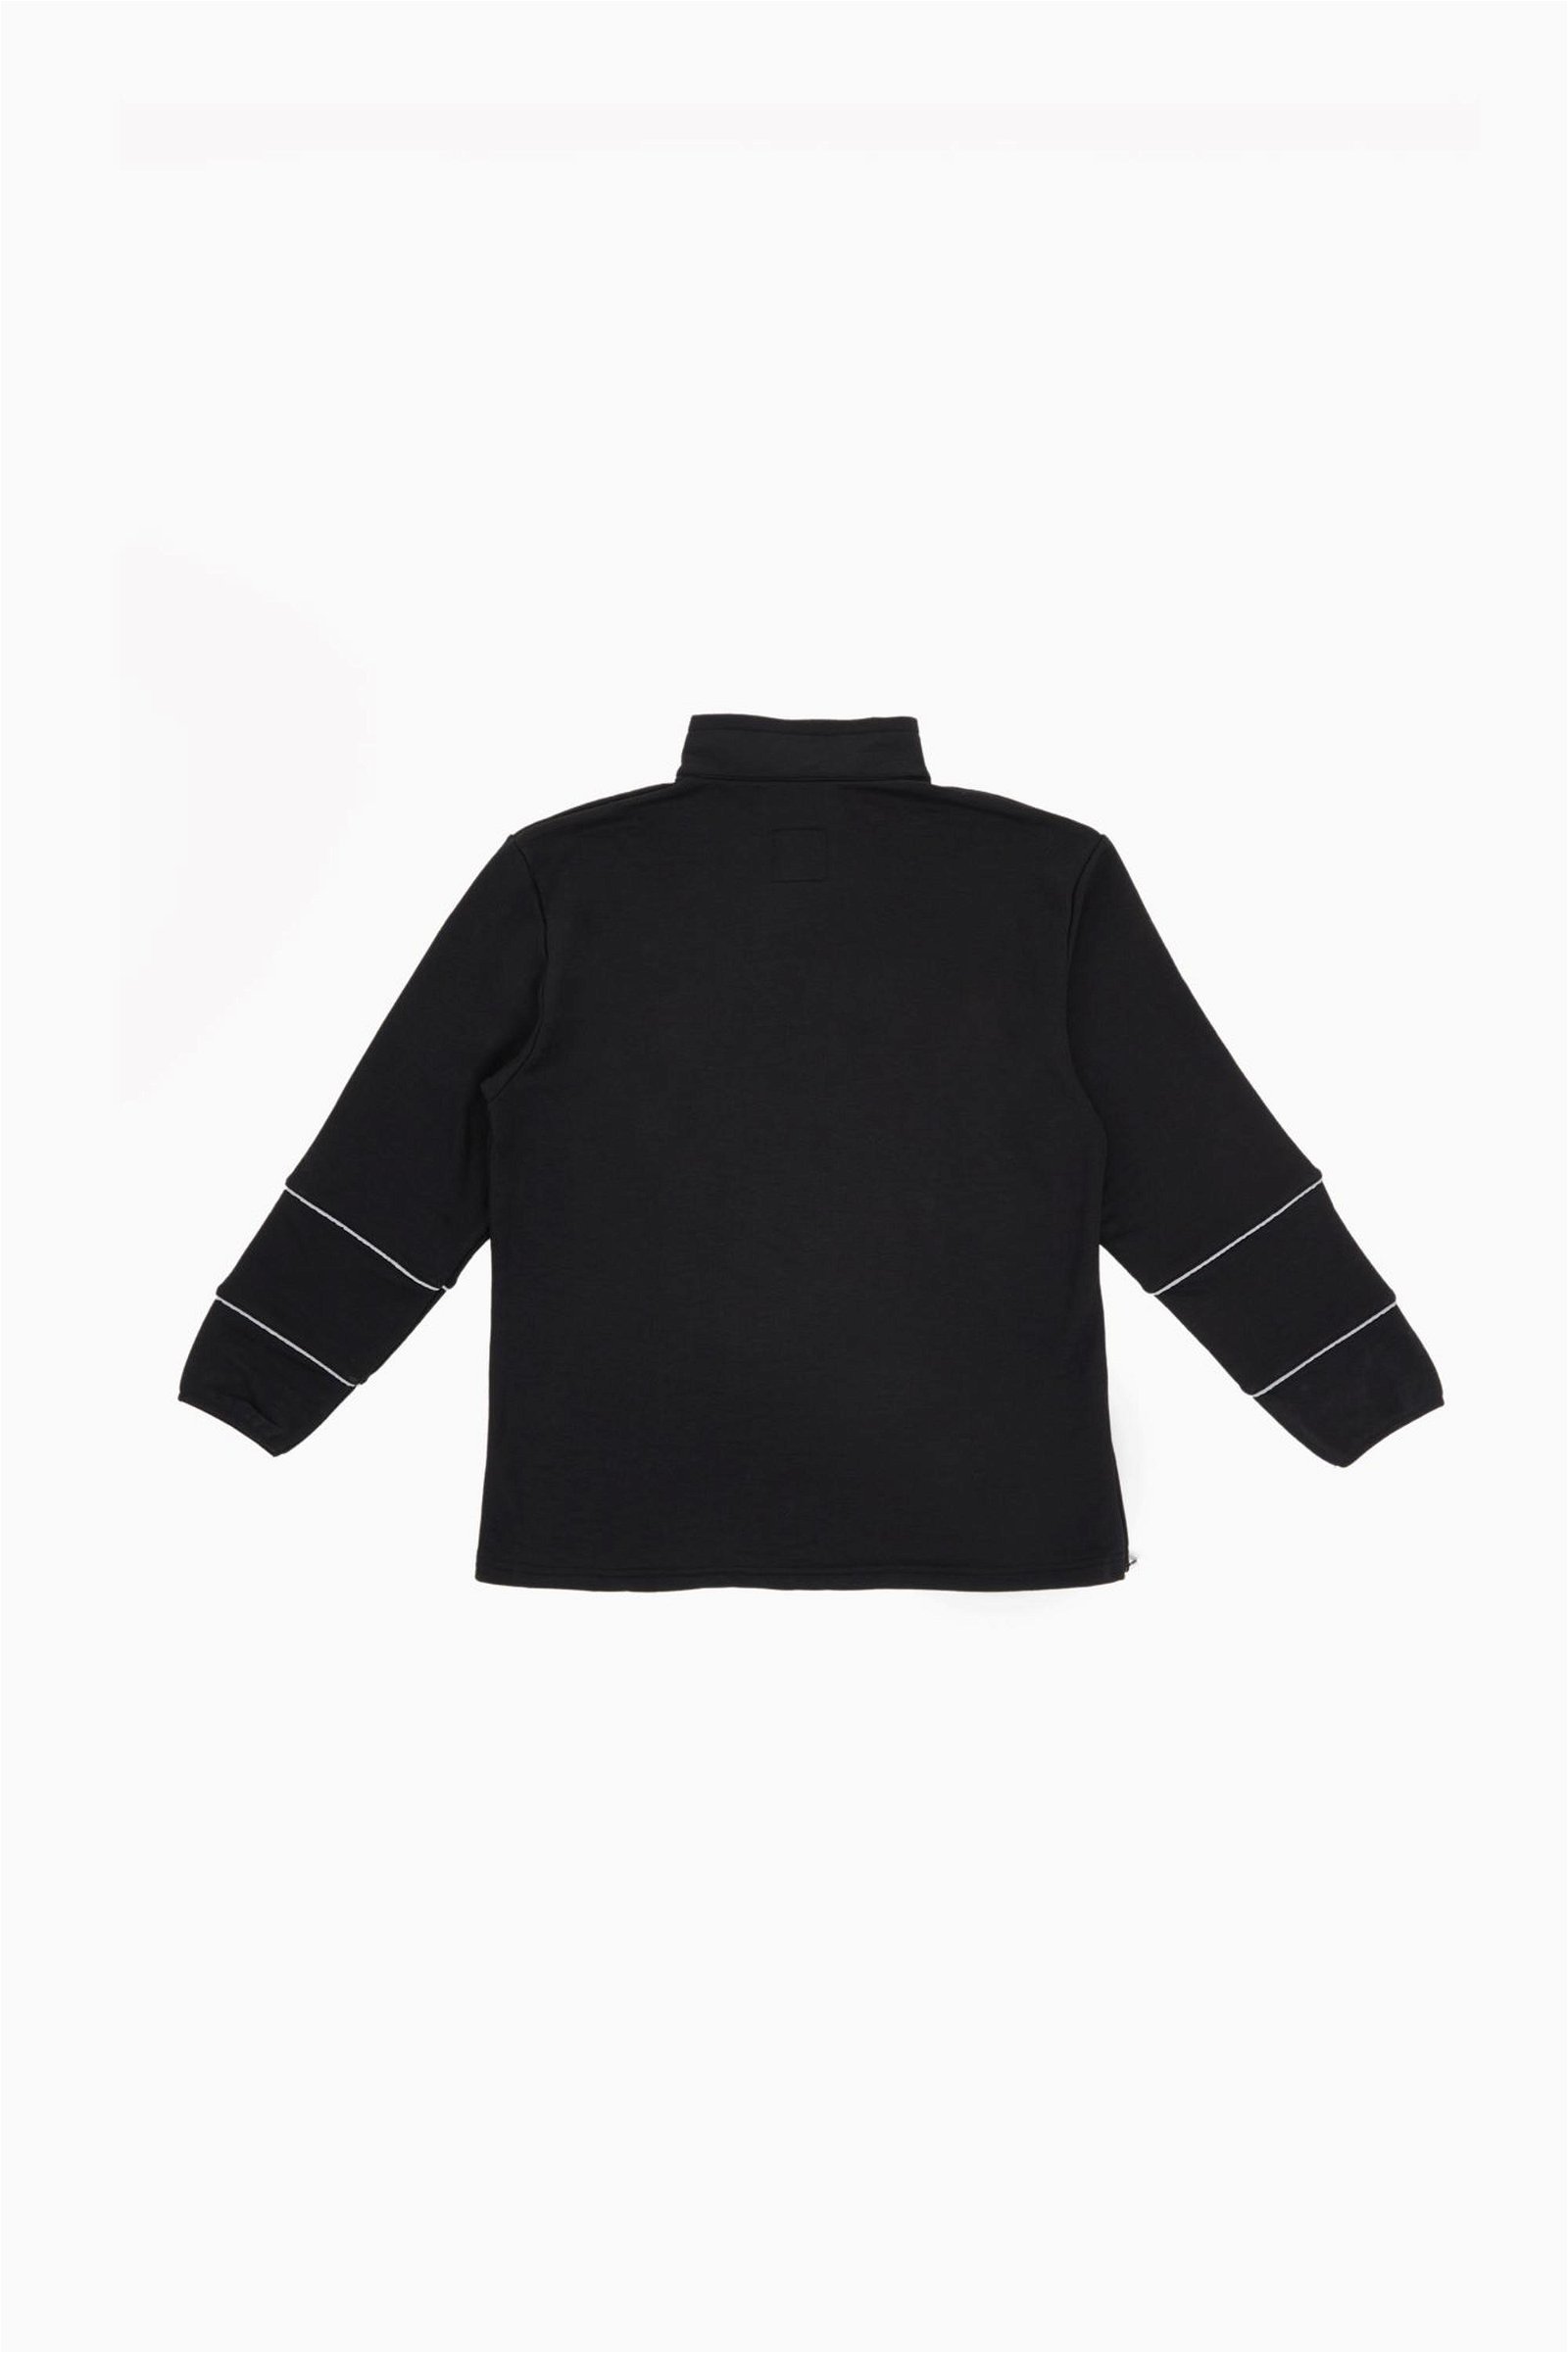 For Fun Reflektör Detaylı Unisex Siyah Sweatshirt